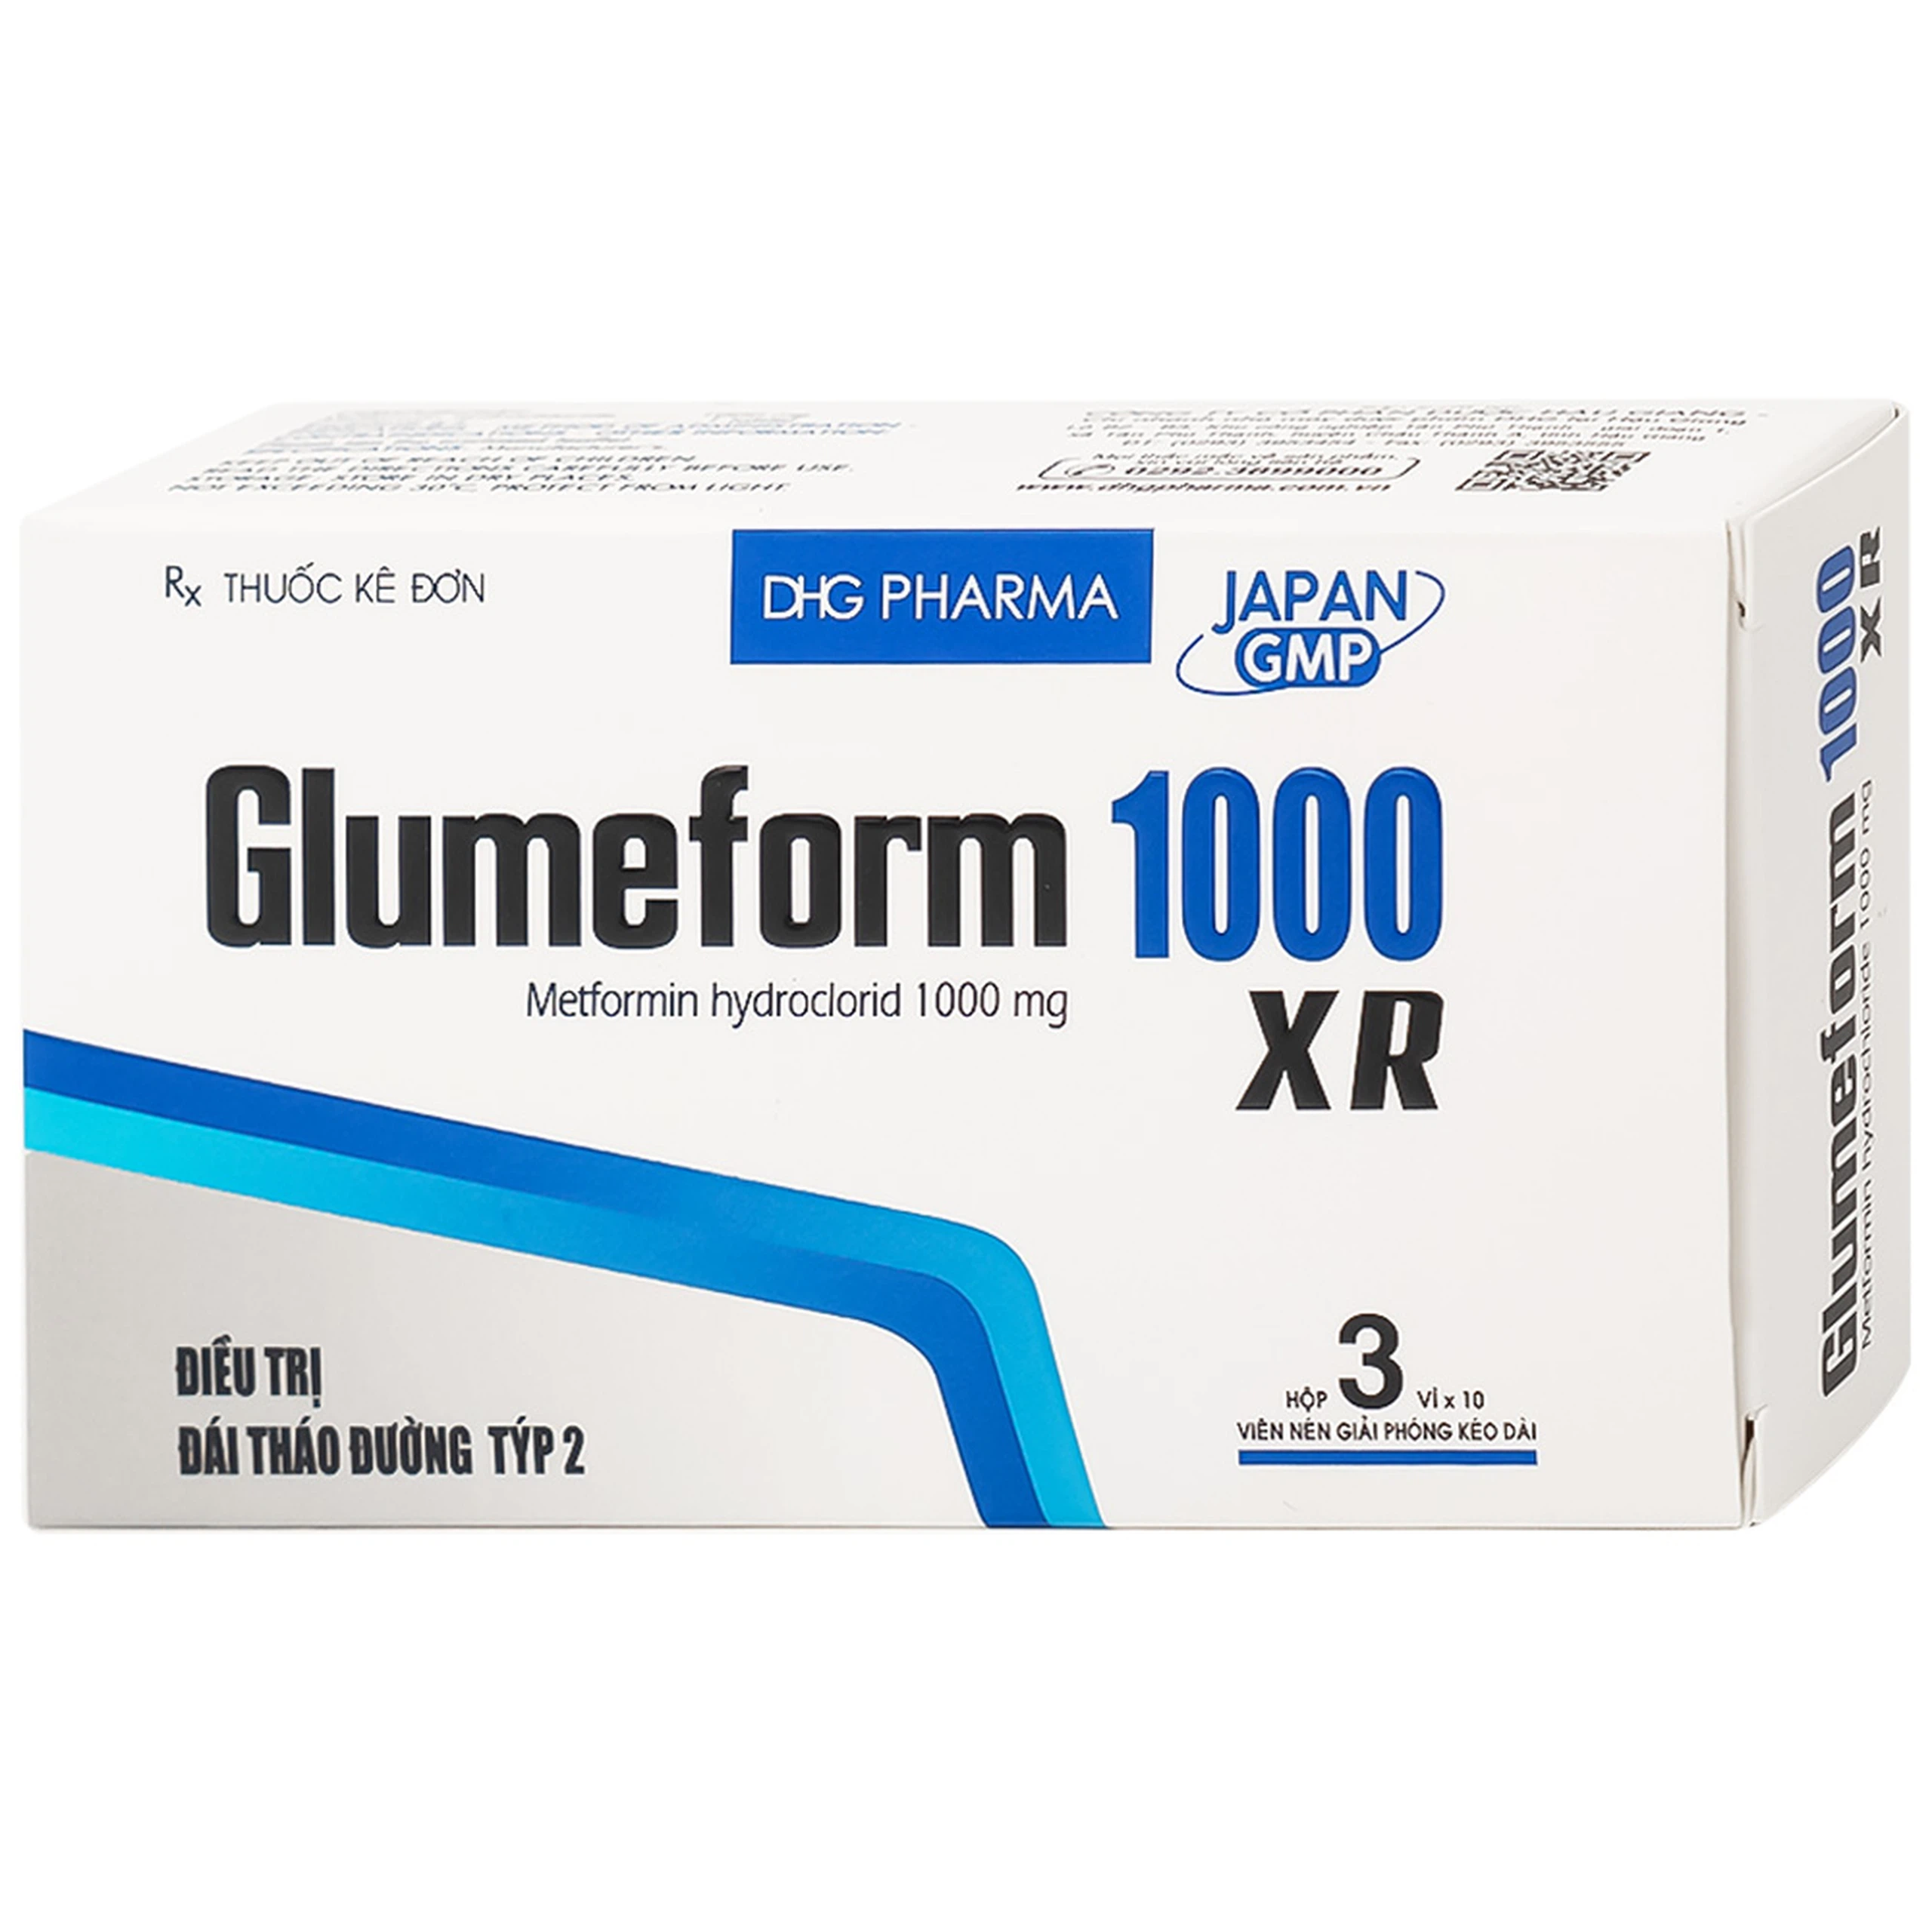 Thuốc Glumeform 1000 XR DHG điều trị đái tháo đường tuýp 2 (3 vỉ x 10 viên)